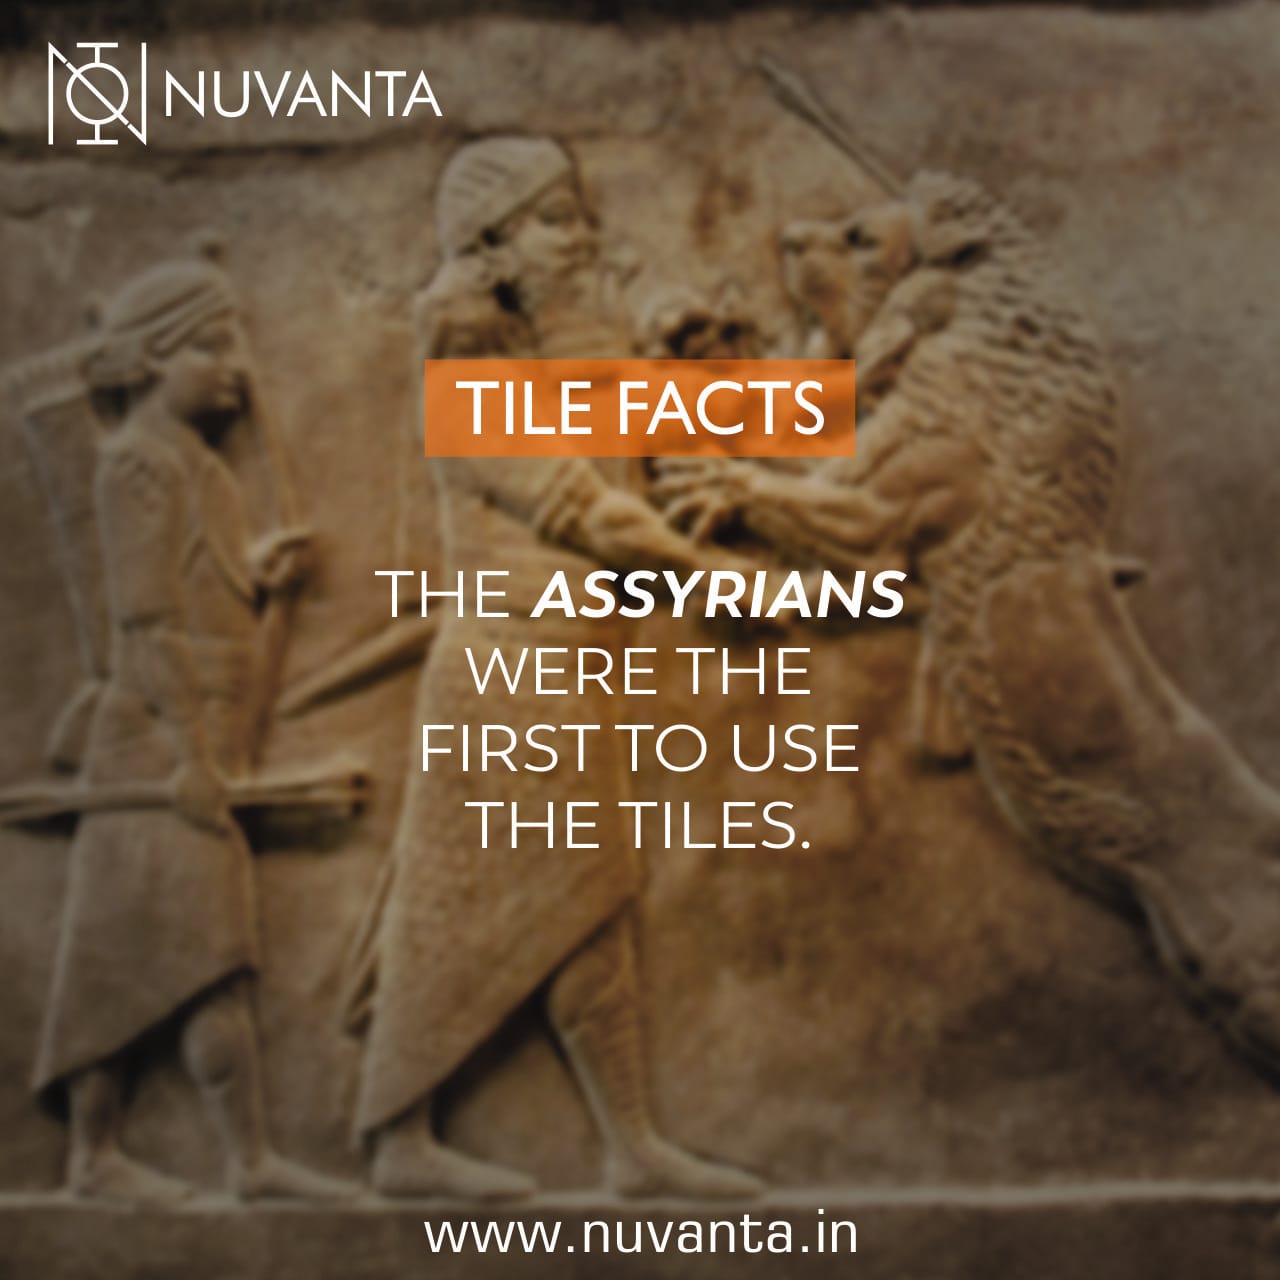 Tiles Facts #1 Nuvanta Tiles